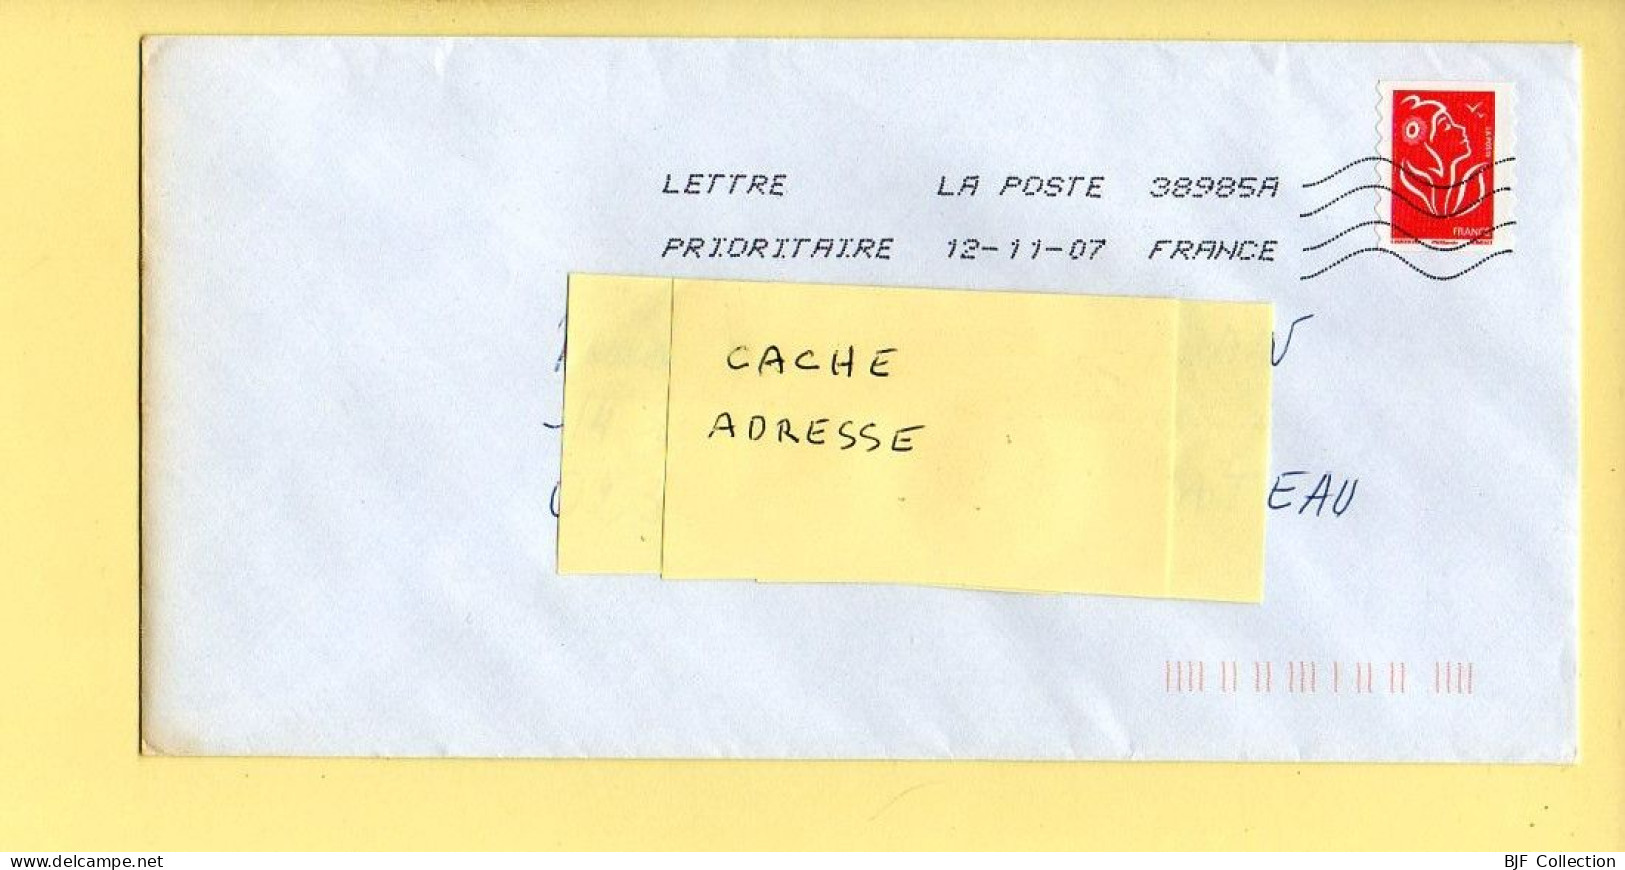 Oblitération Mécanique : FRANCE LA POSTE – 38985A Du 12/11/2007 (voir Timbre) - Mechanical Postmarks (Other)